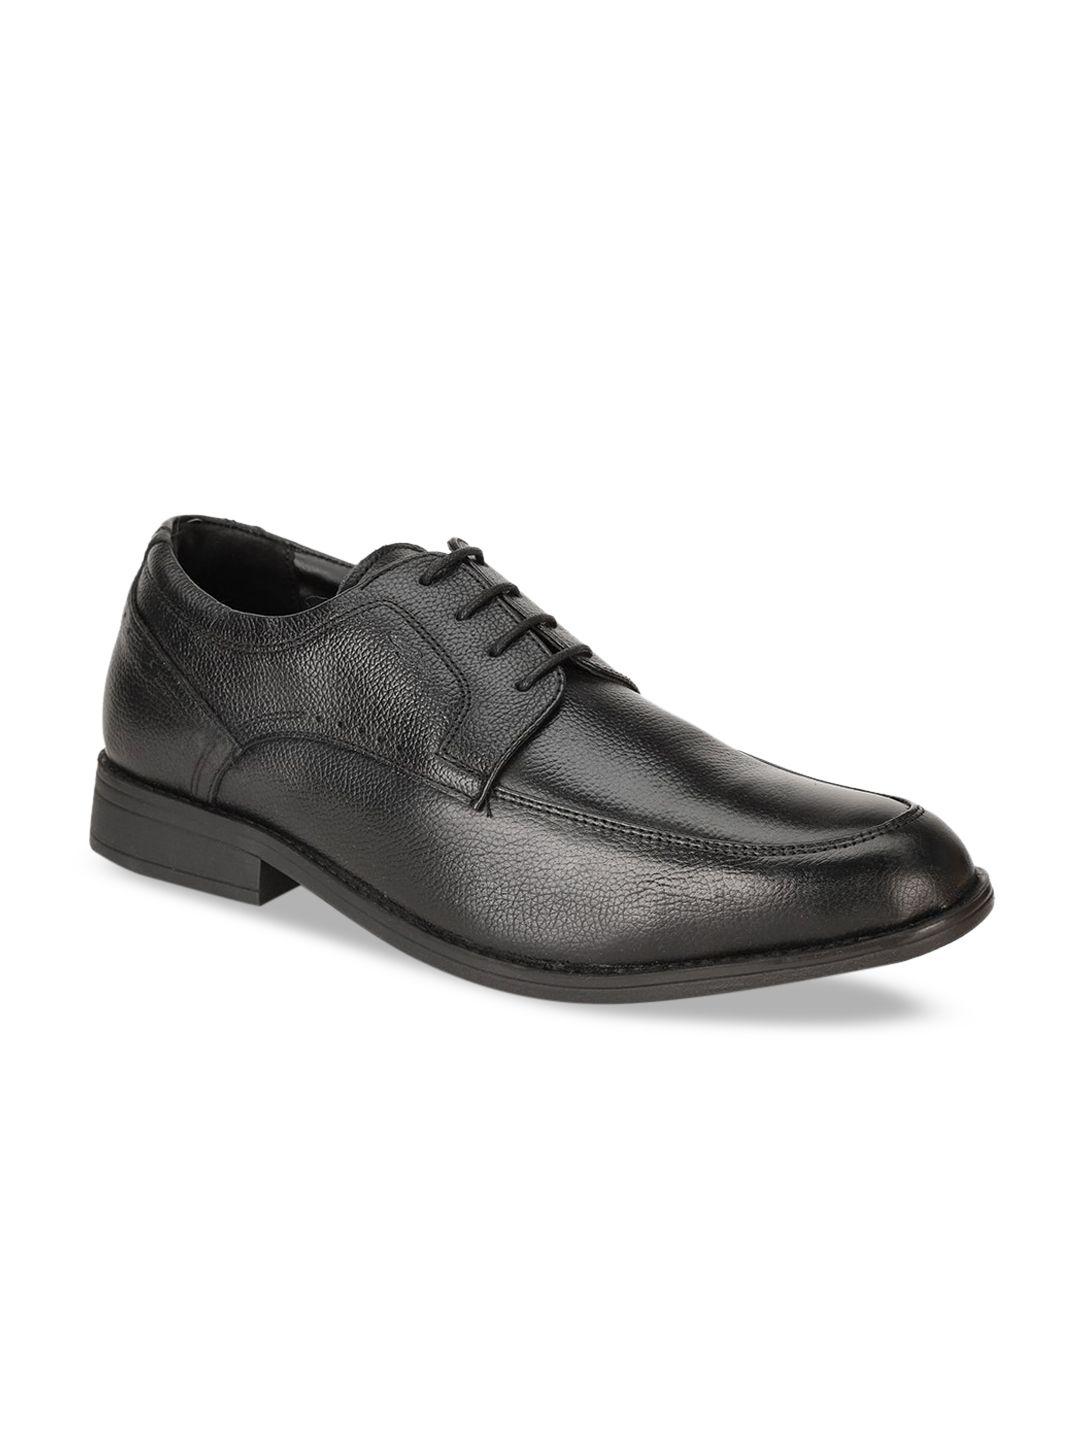 bata-men-black-solid-leather-formal-derbys